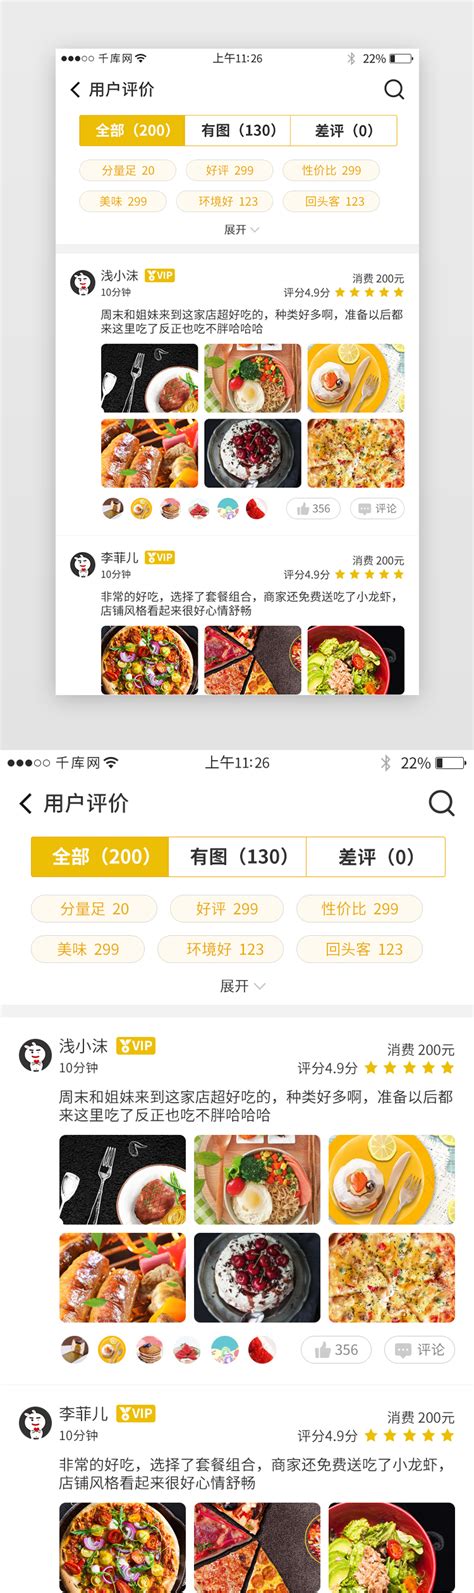 美食UI设计用户界面套件素材下载 - 设计口袋